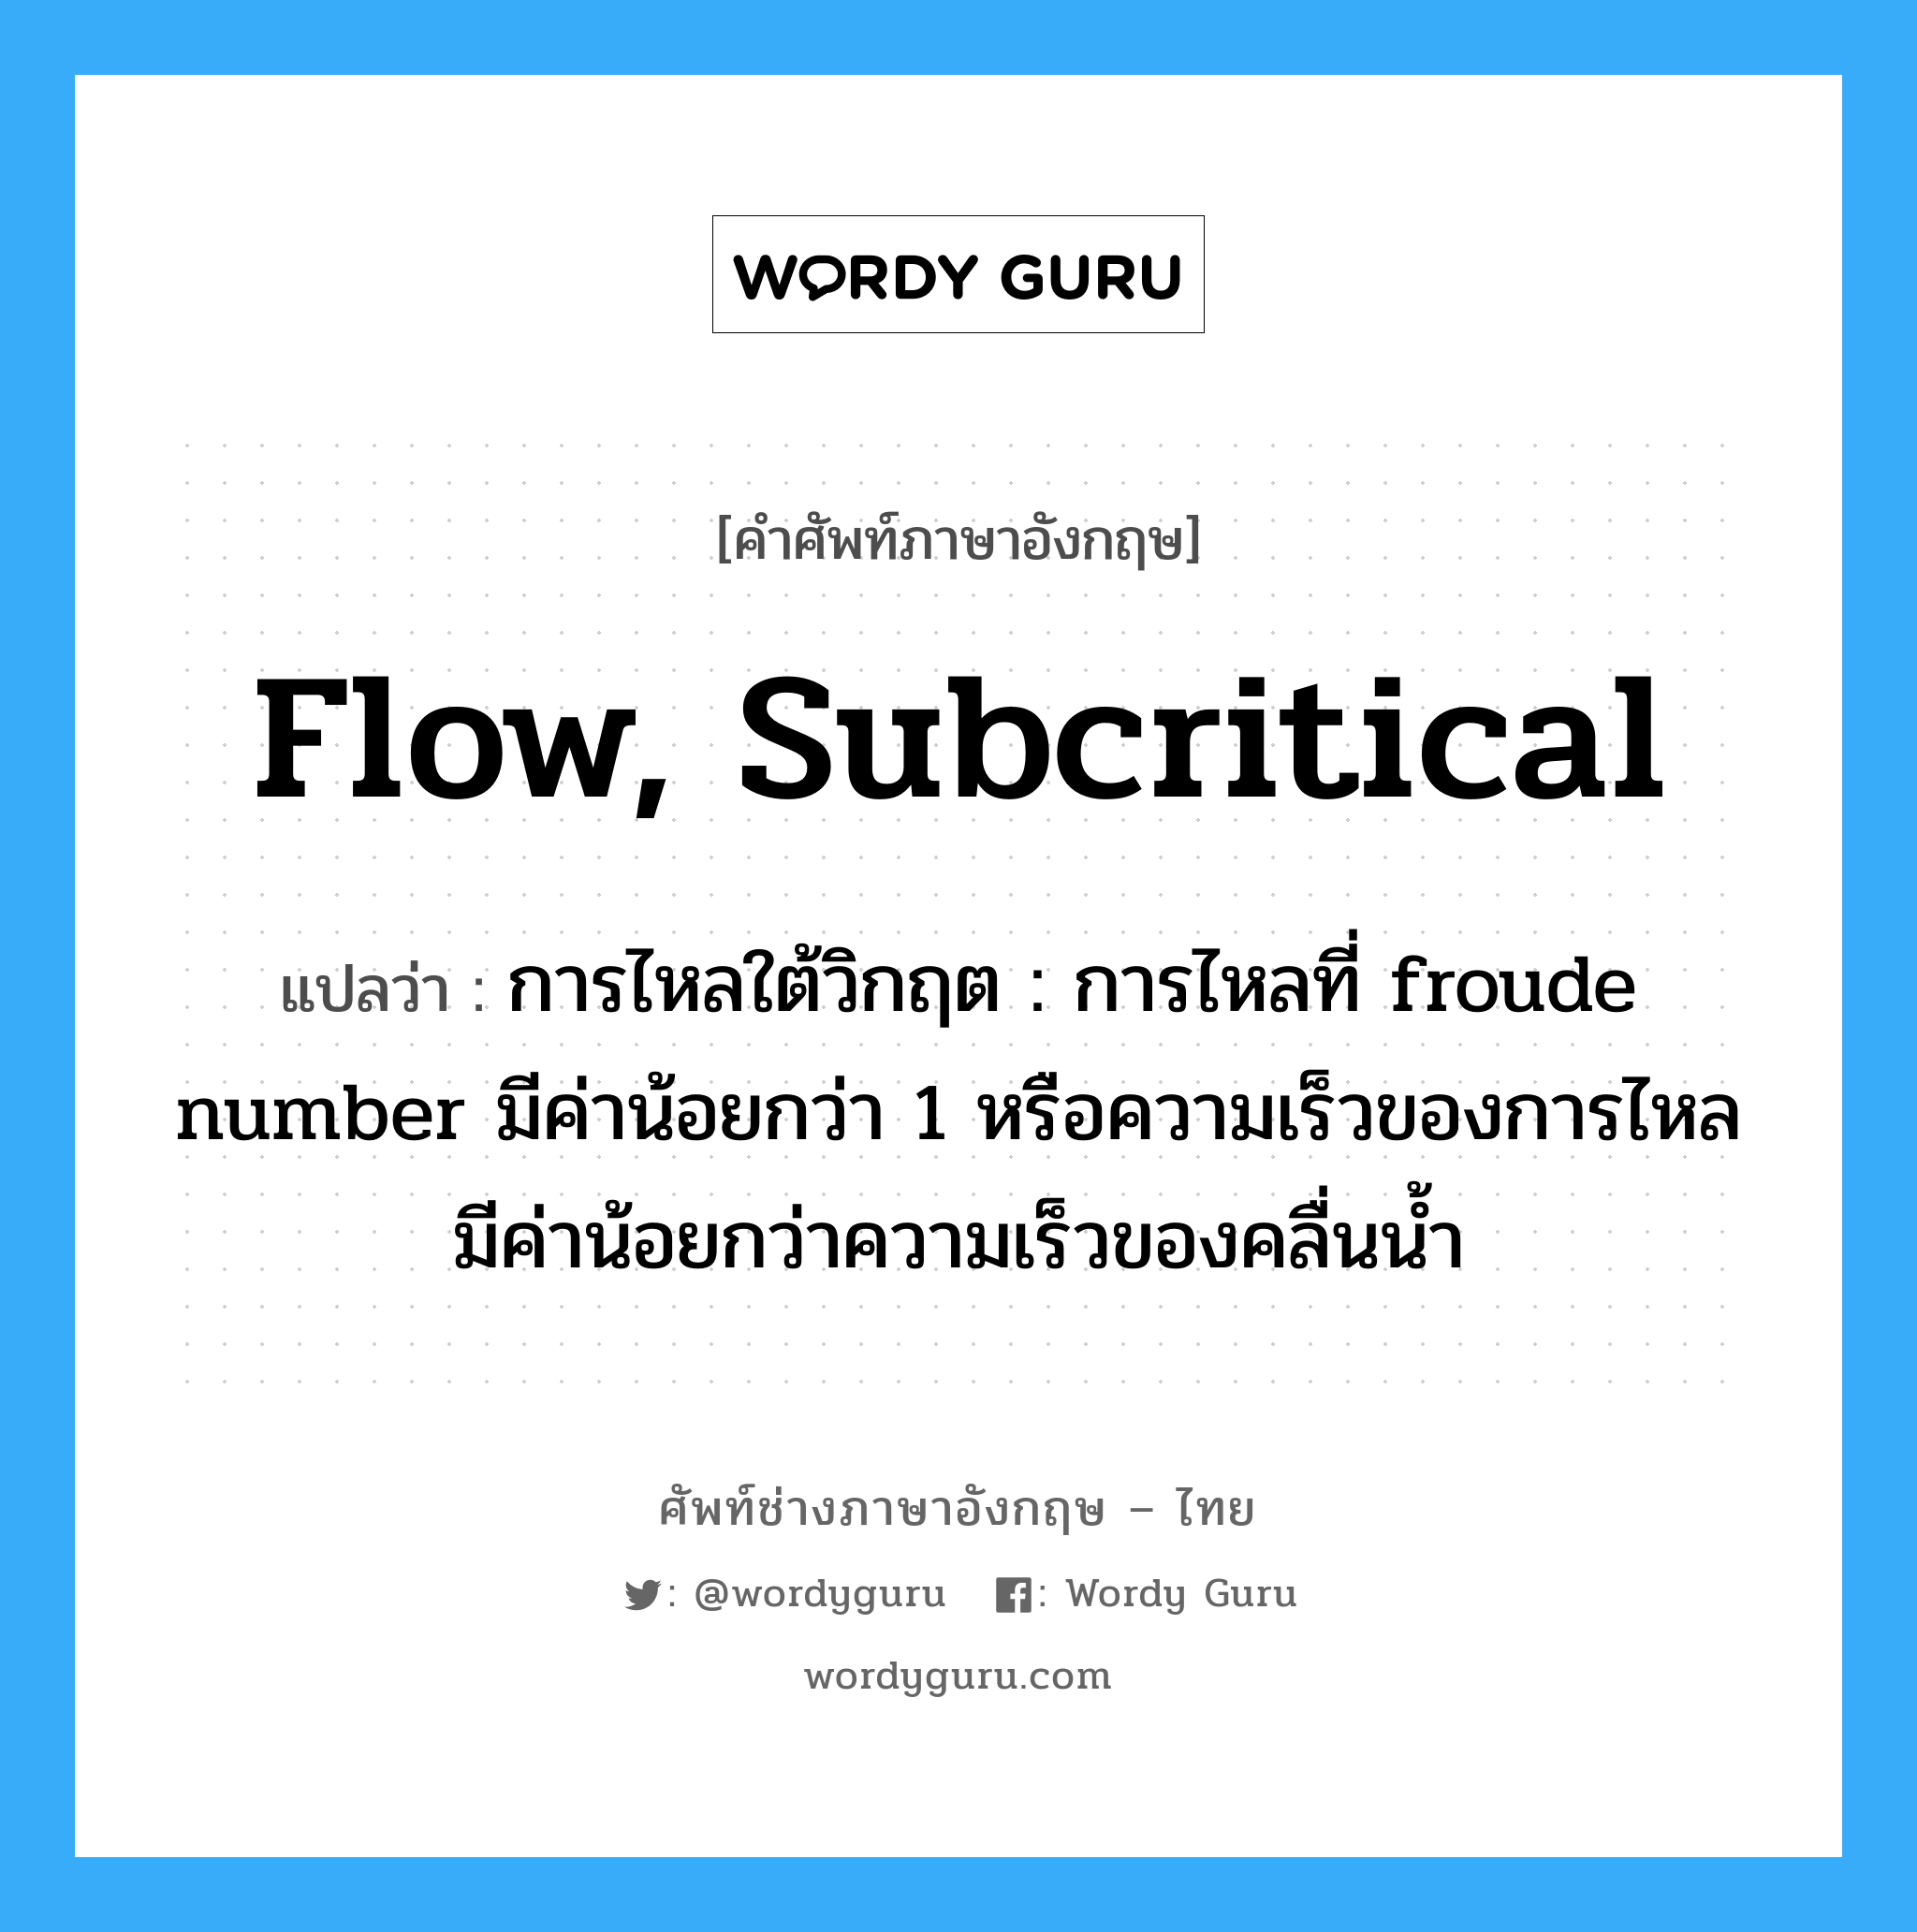 flow, subcritical แปลว่า?, คำศัพท์ช่างภาษาอังกฤษ - ไทย flow, subcritical คำศัพท์ภาษาอังกฤษ flow, subcritical แปลว่า การไหลใต้วิกฤต : การไหลที่ froude number มีค่าน้อยกว่า 1 หรือความเร็วของการไหลมีค่าน้อยกว่าความเร็วของคลื่นน้ำ